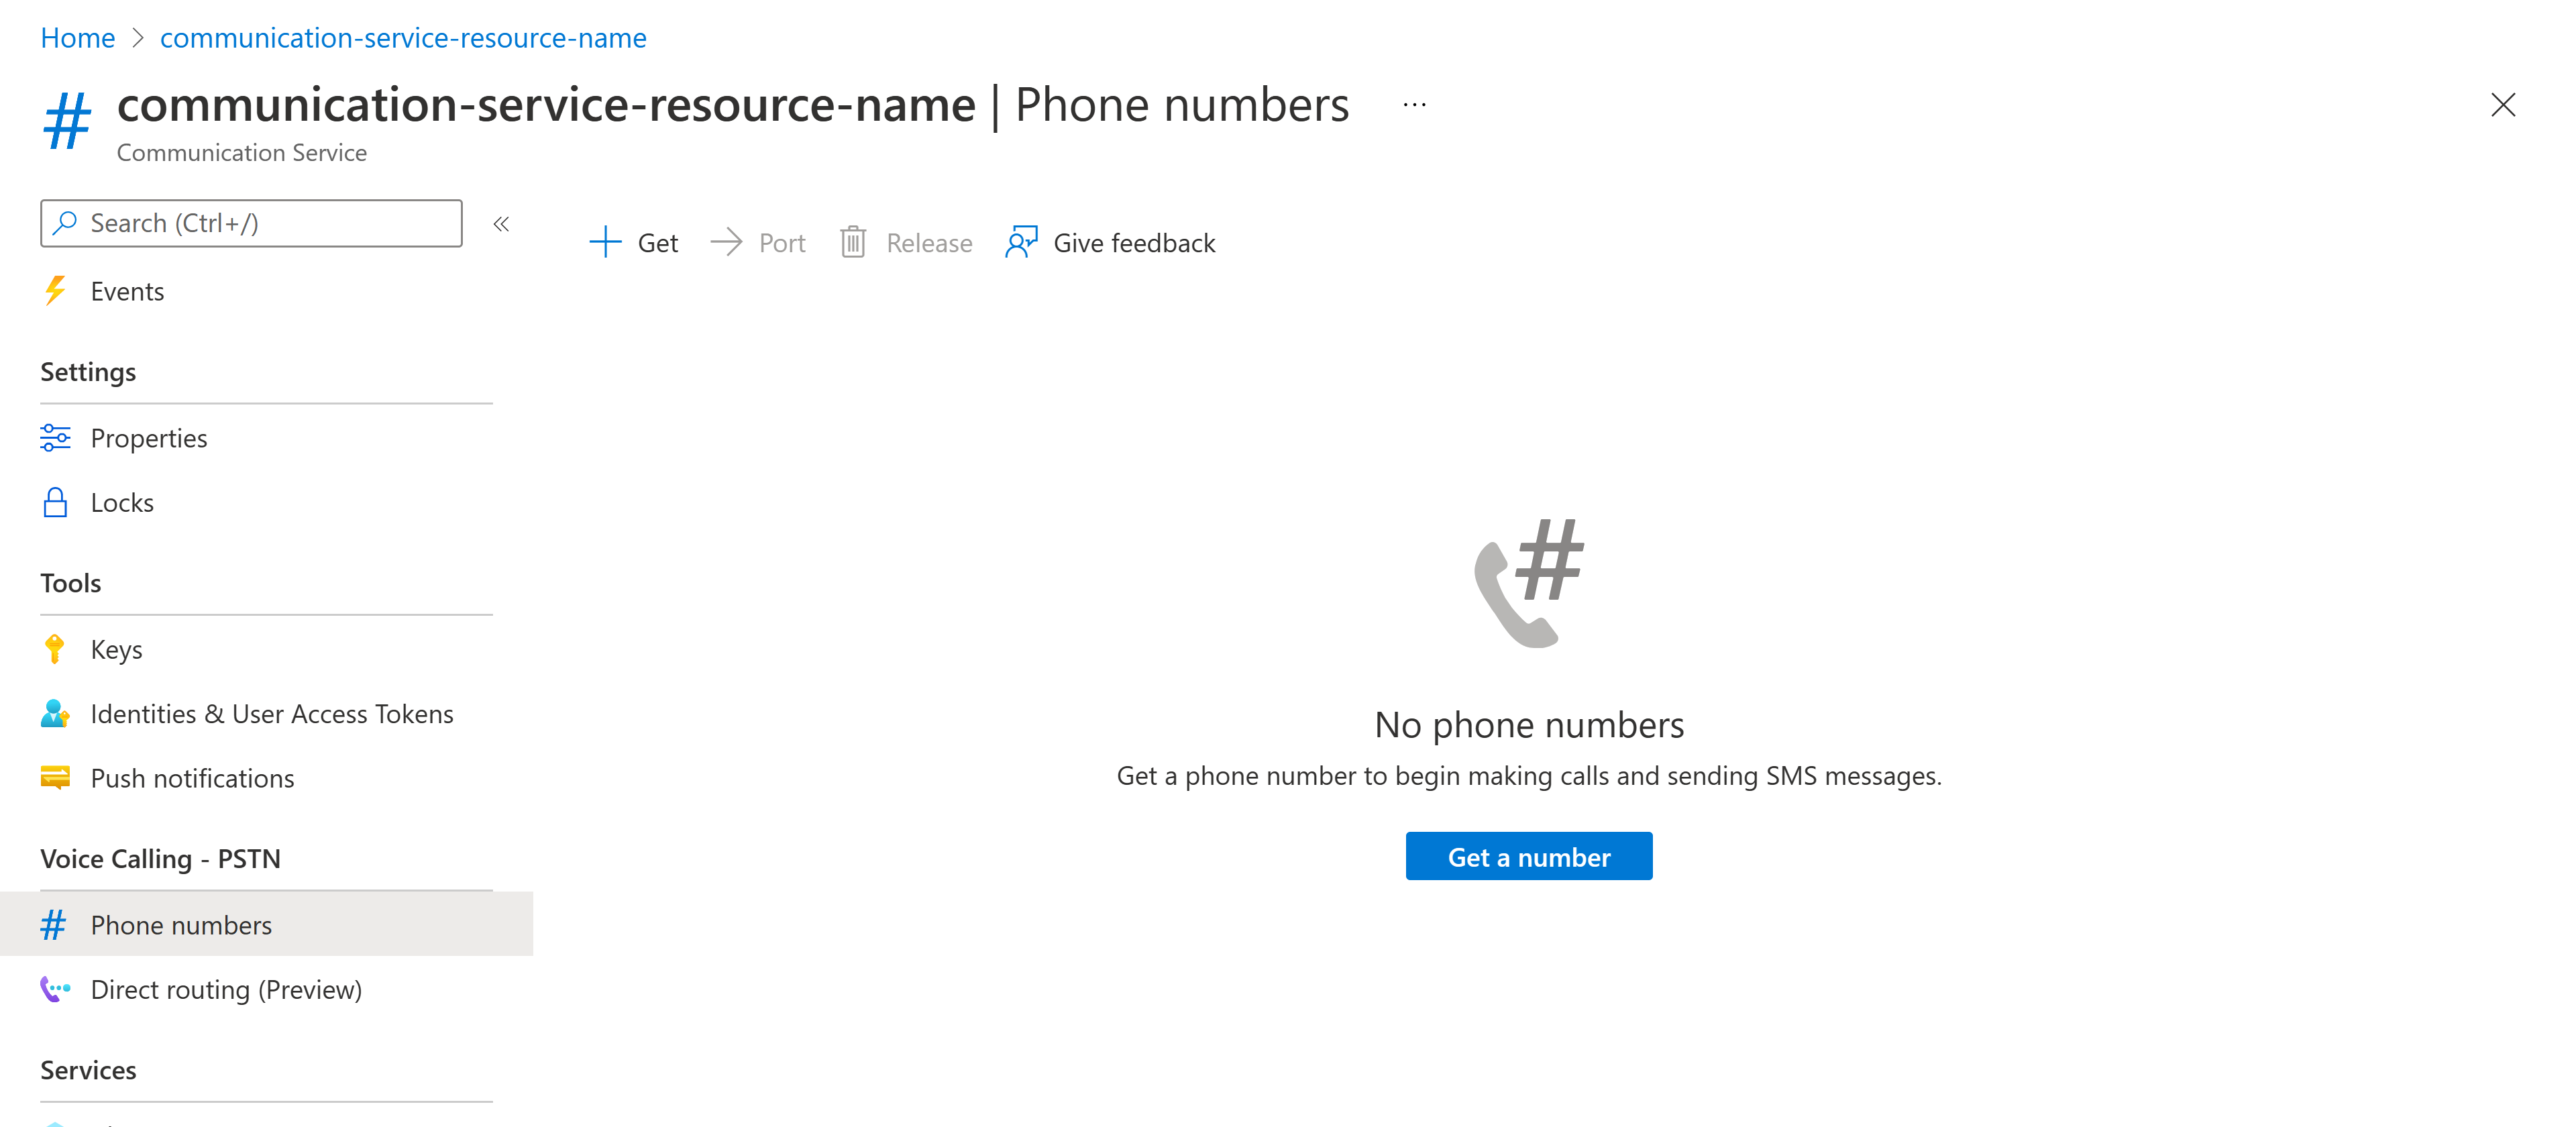 Снимок экрана: страница с номерами телефонов ресурса Служб коммуникации.